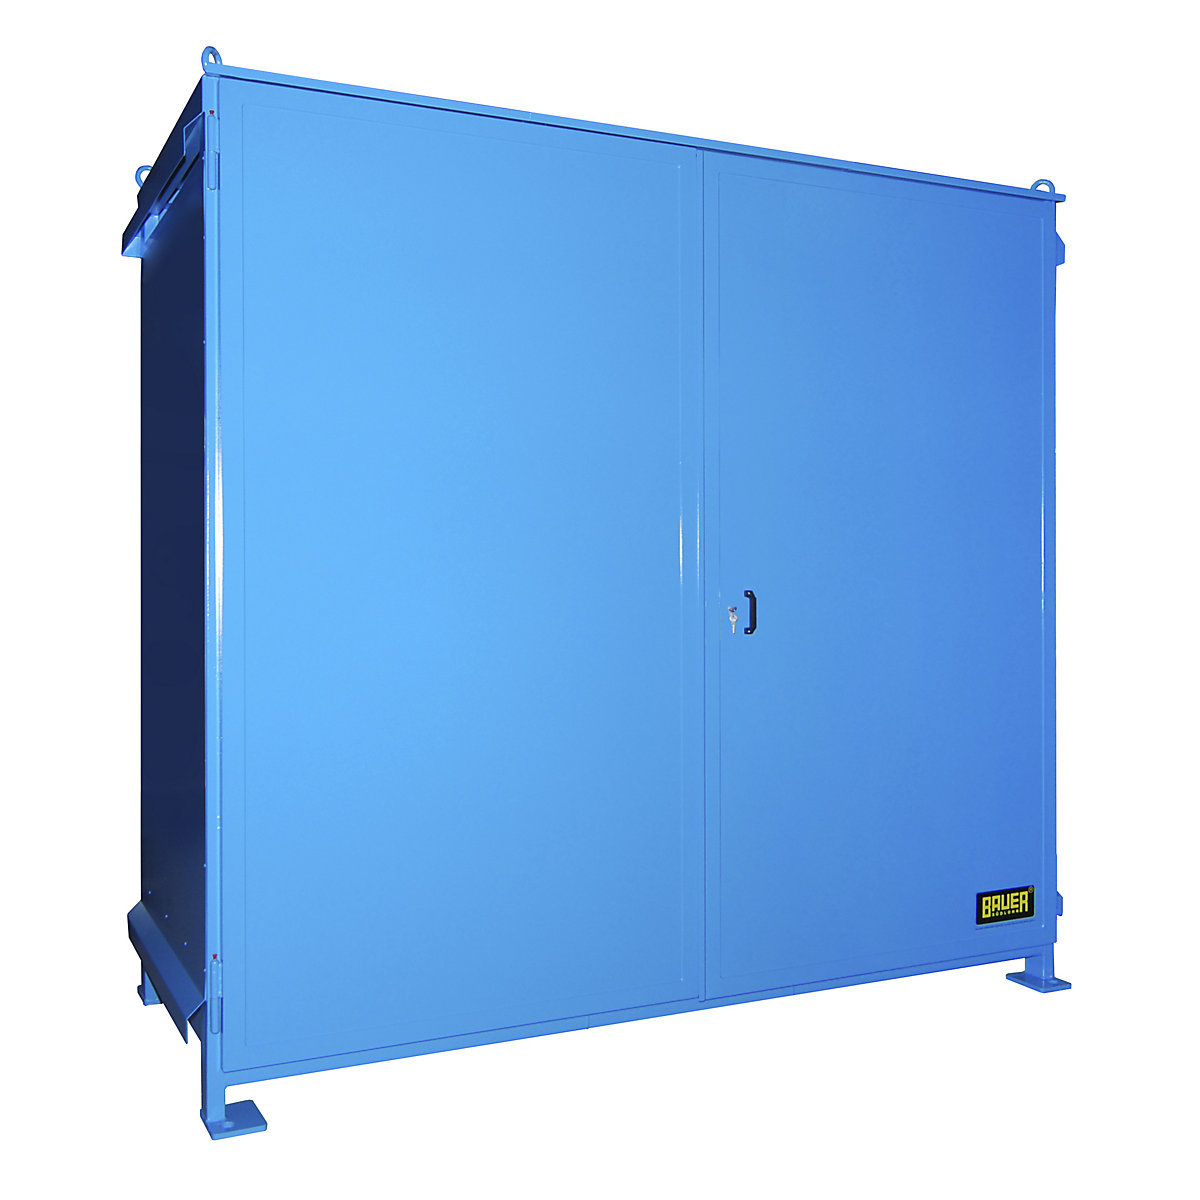 Conteneur à rayonnages pour produits dangereux – eurokraft pro, capacité 16 fûts de 200 l, bleu-6